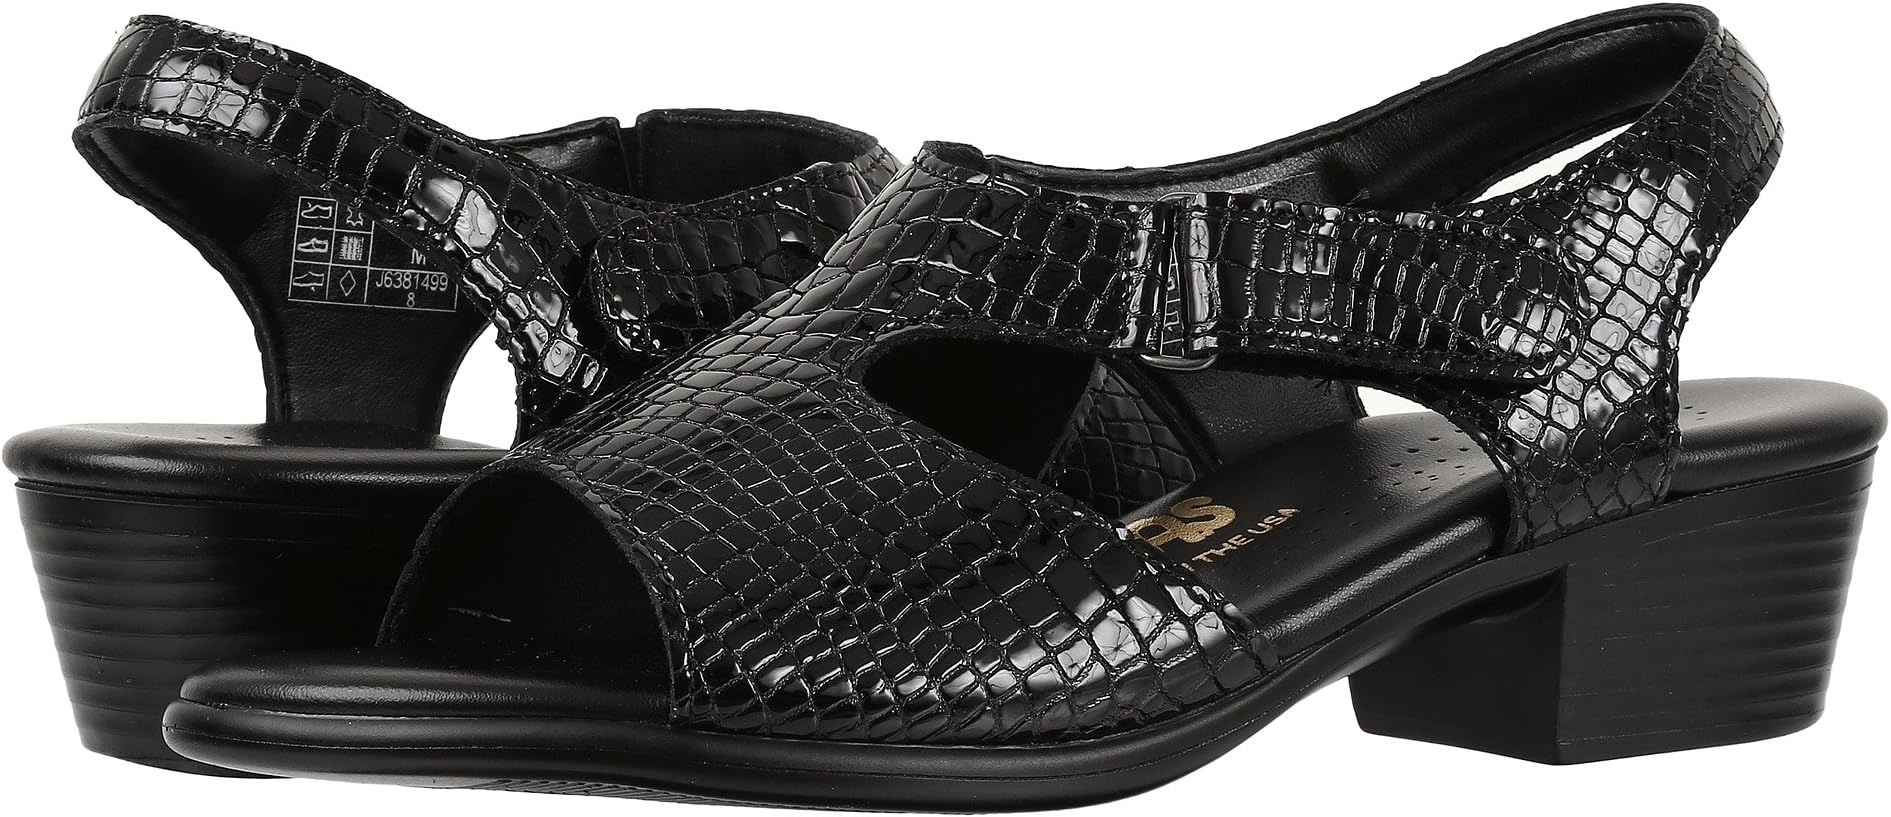 Босоножки Suntimer SAS, цвет Black Croc